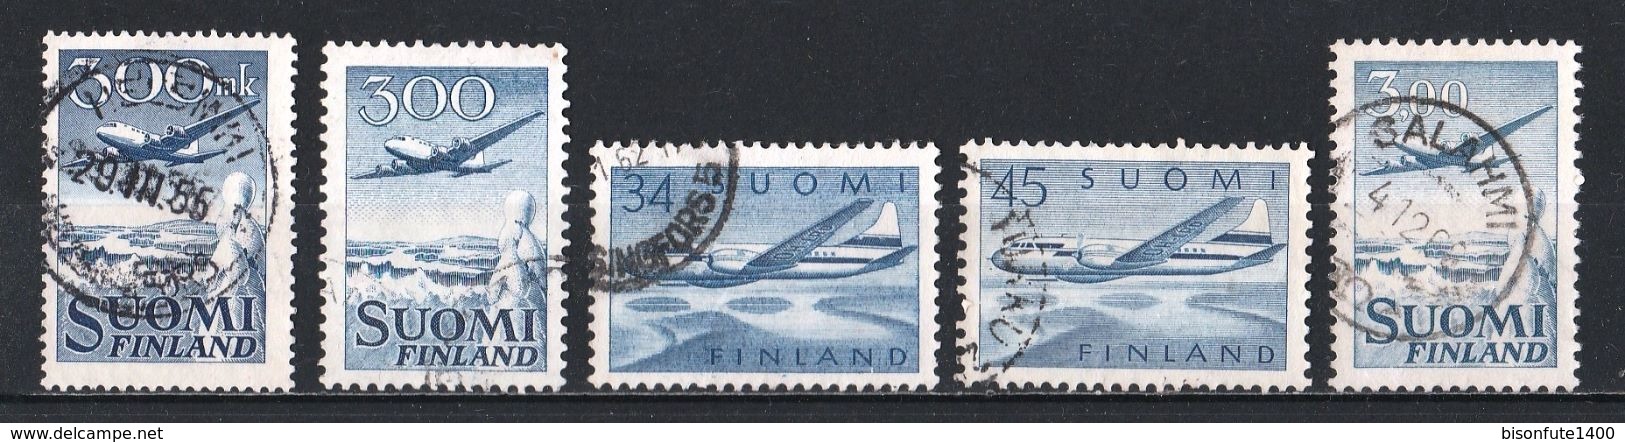 FINLANDE Poste Aérienne : Timbres Yvert & Tellier N° 3 - 4 - 5 - 6 - 9 - 10 Et 11. - Gebraucht